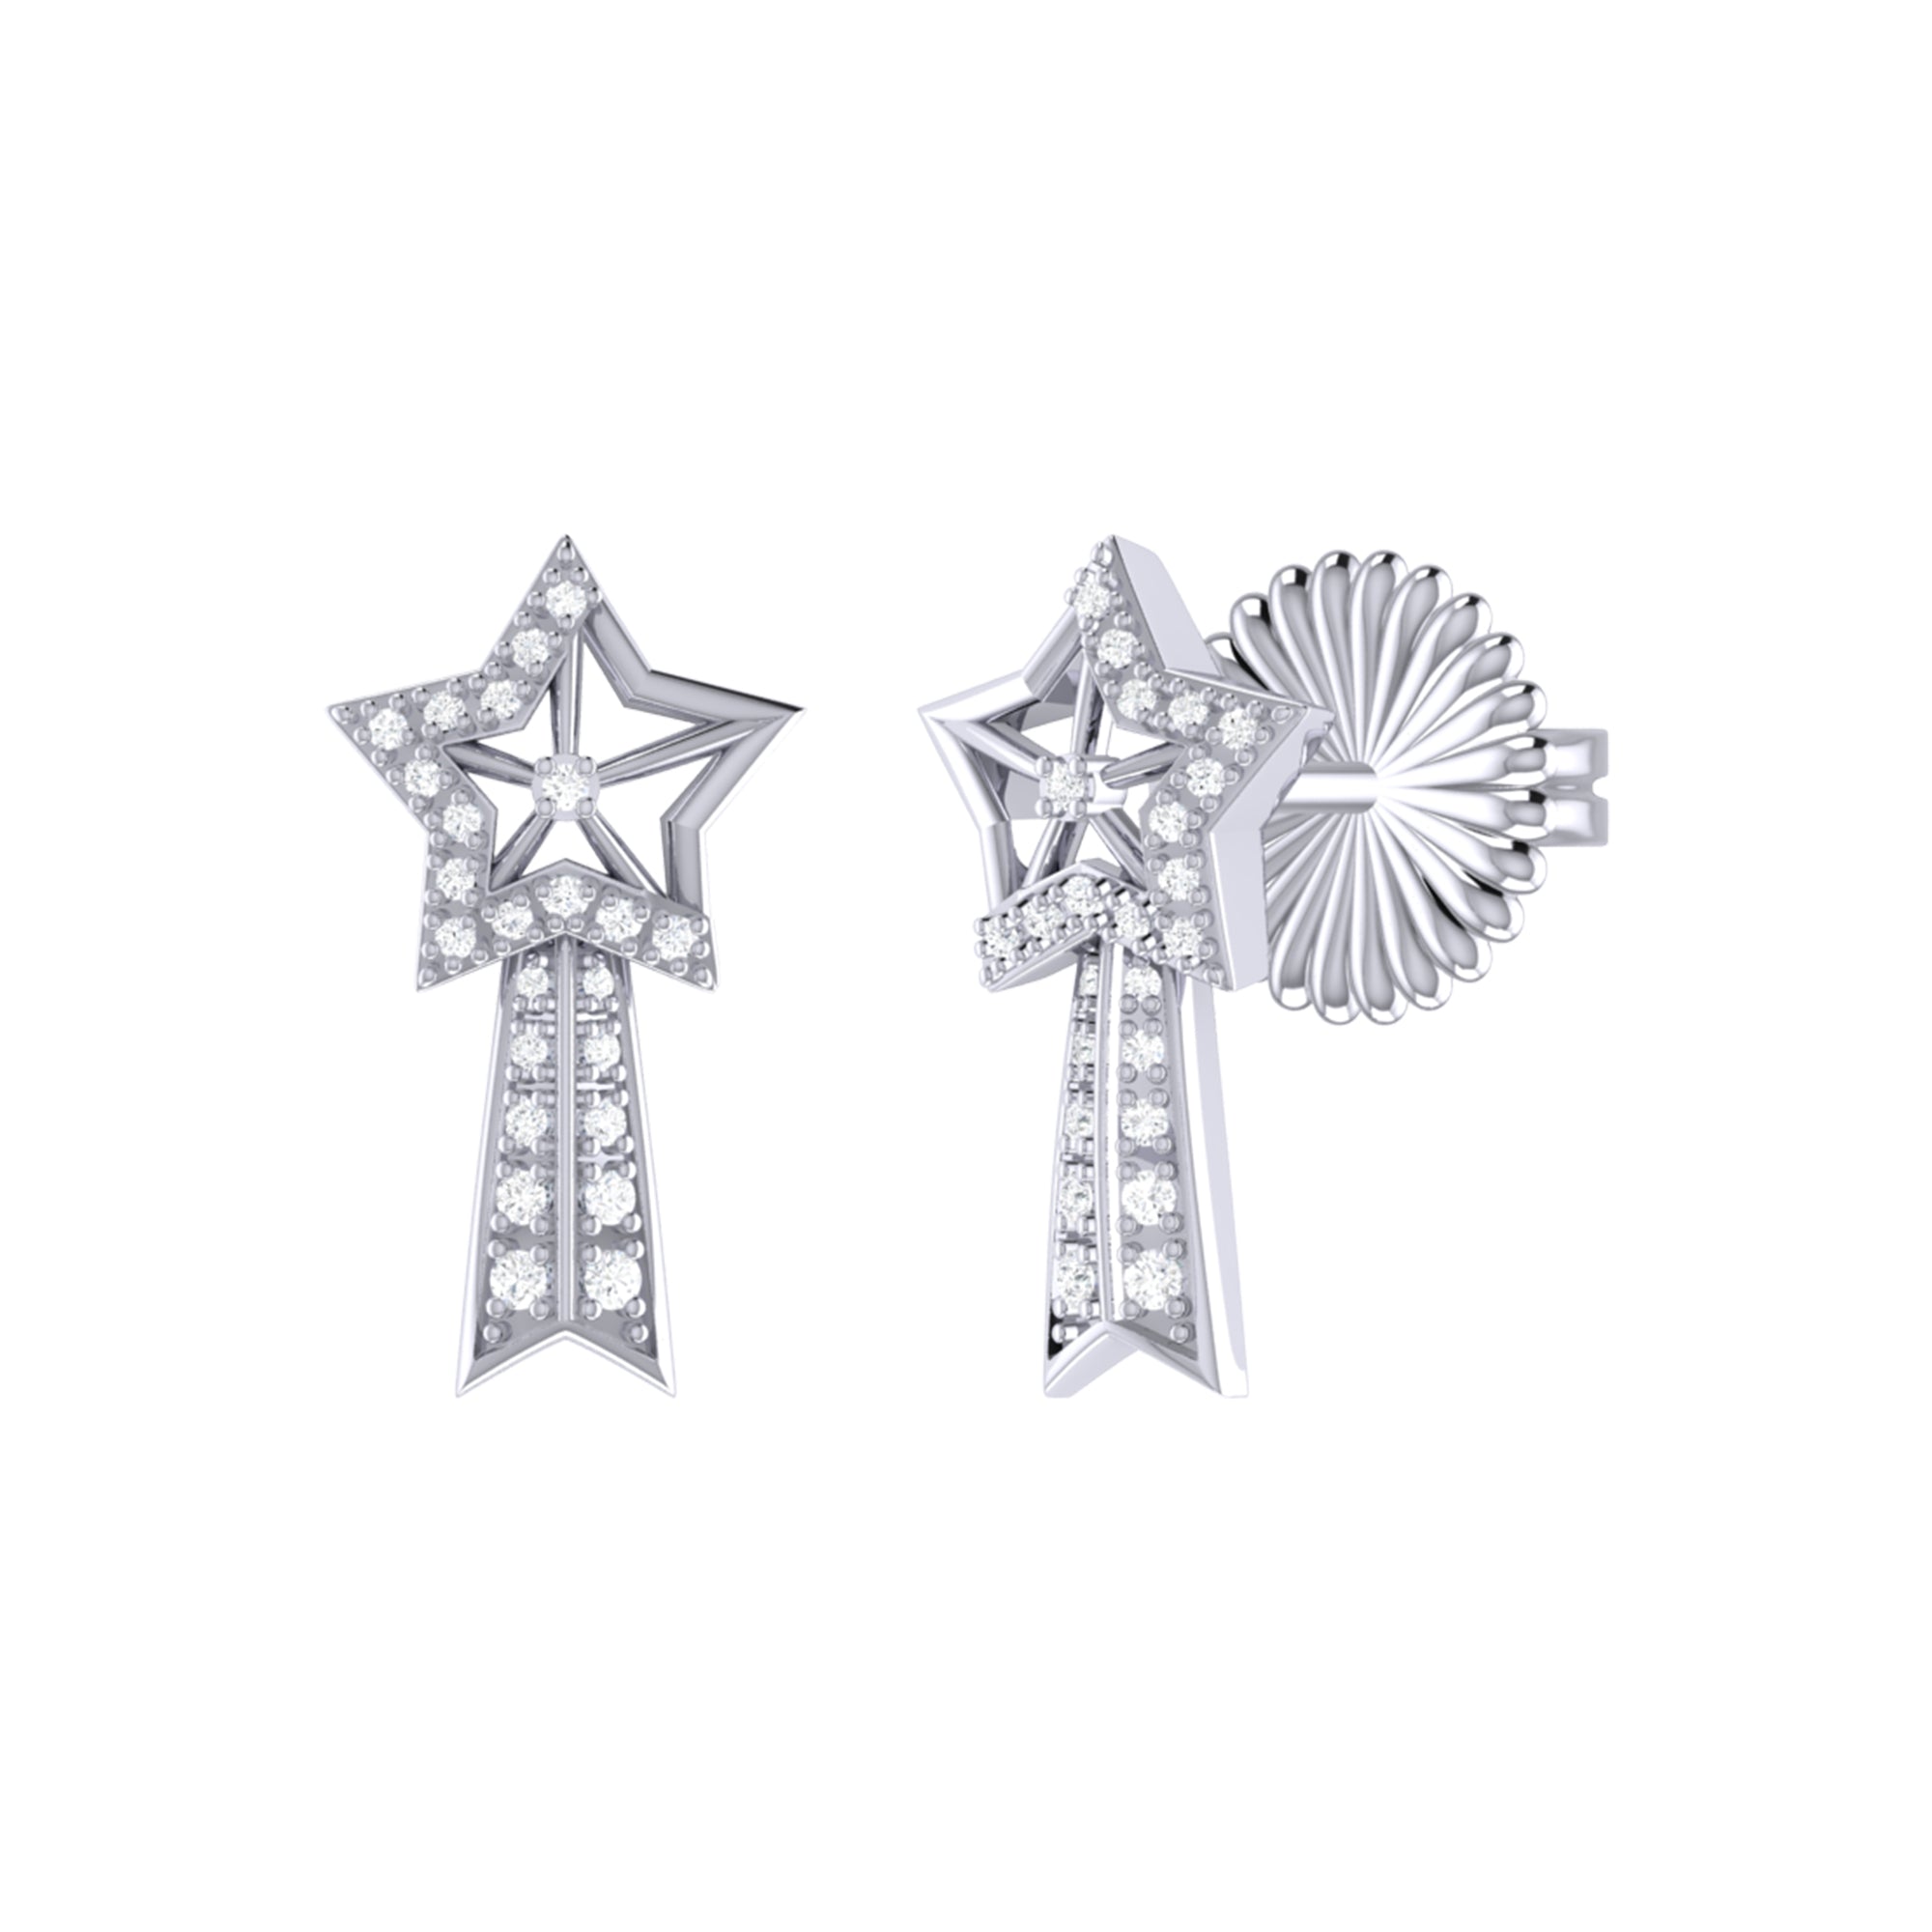 Shooting Star Diamond Comet Earrings in Sterling Silver